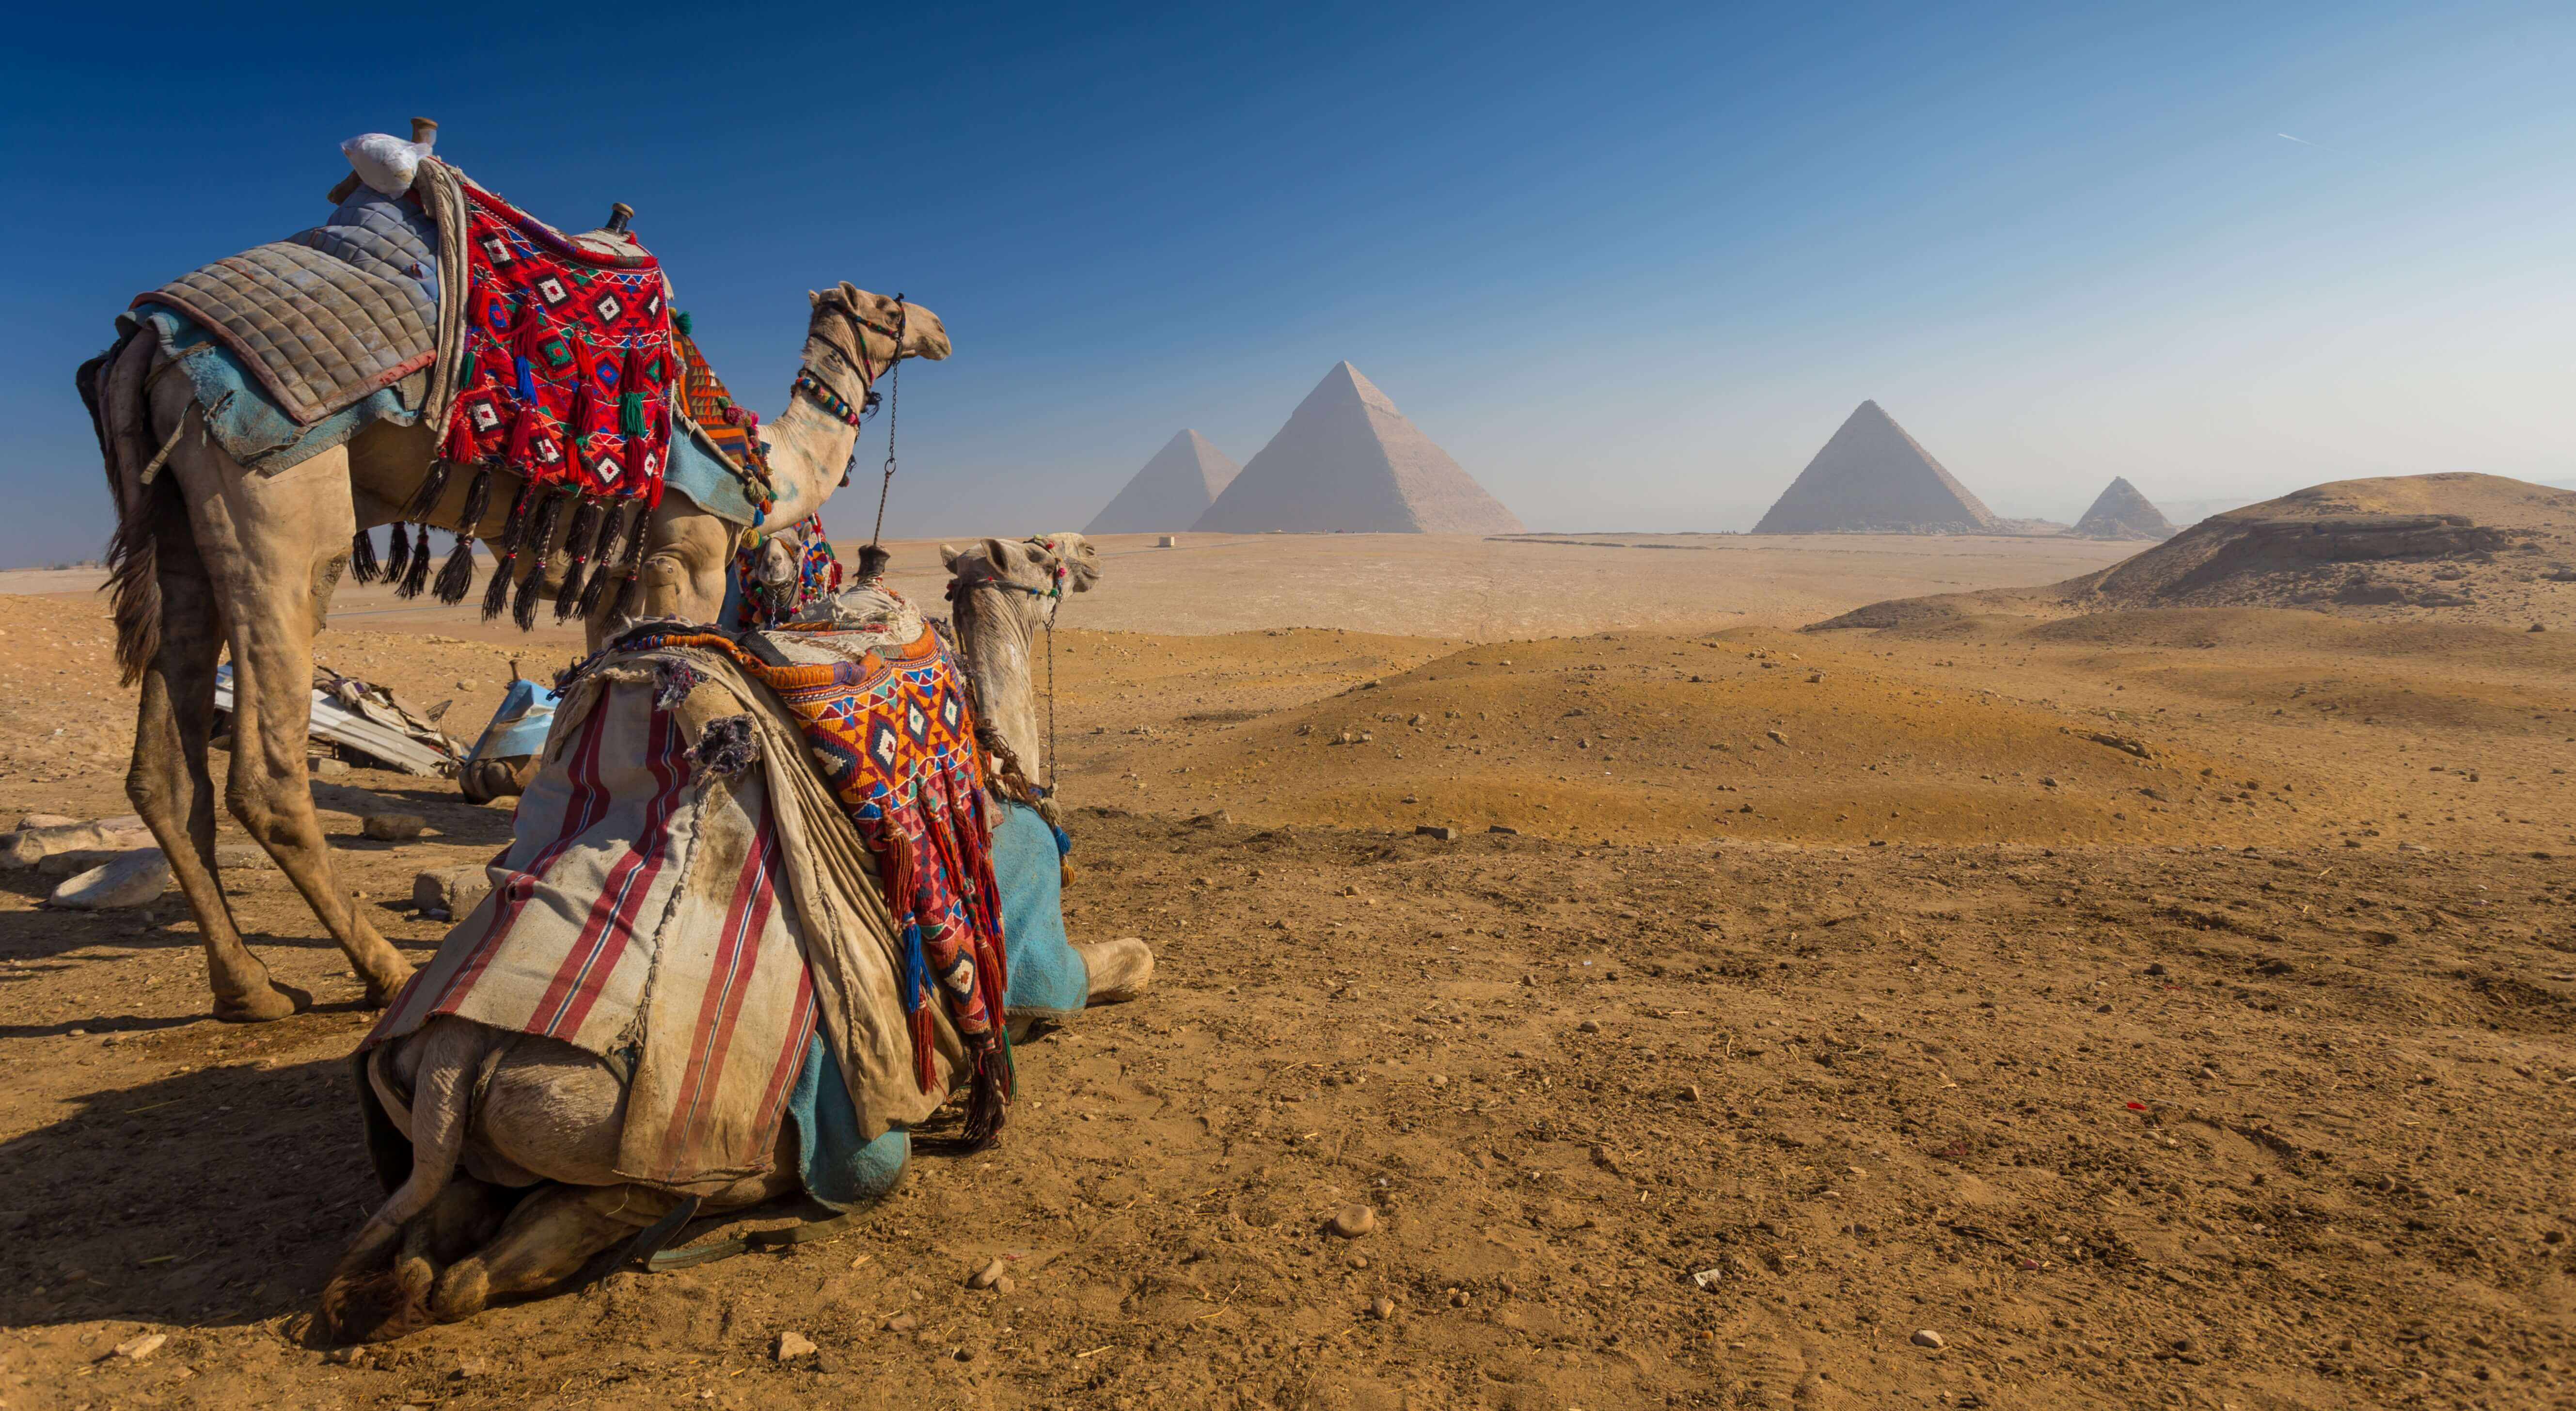 tour of egypt